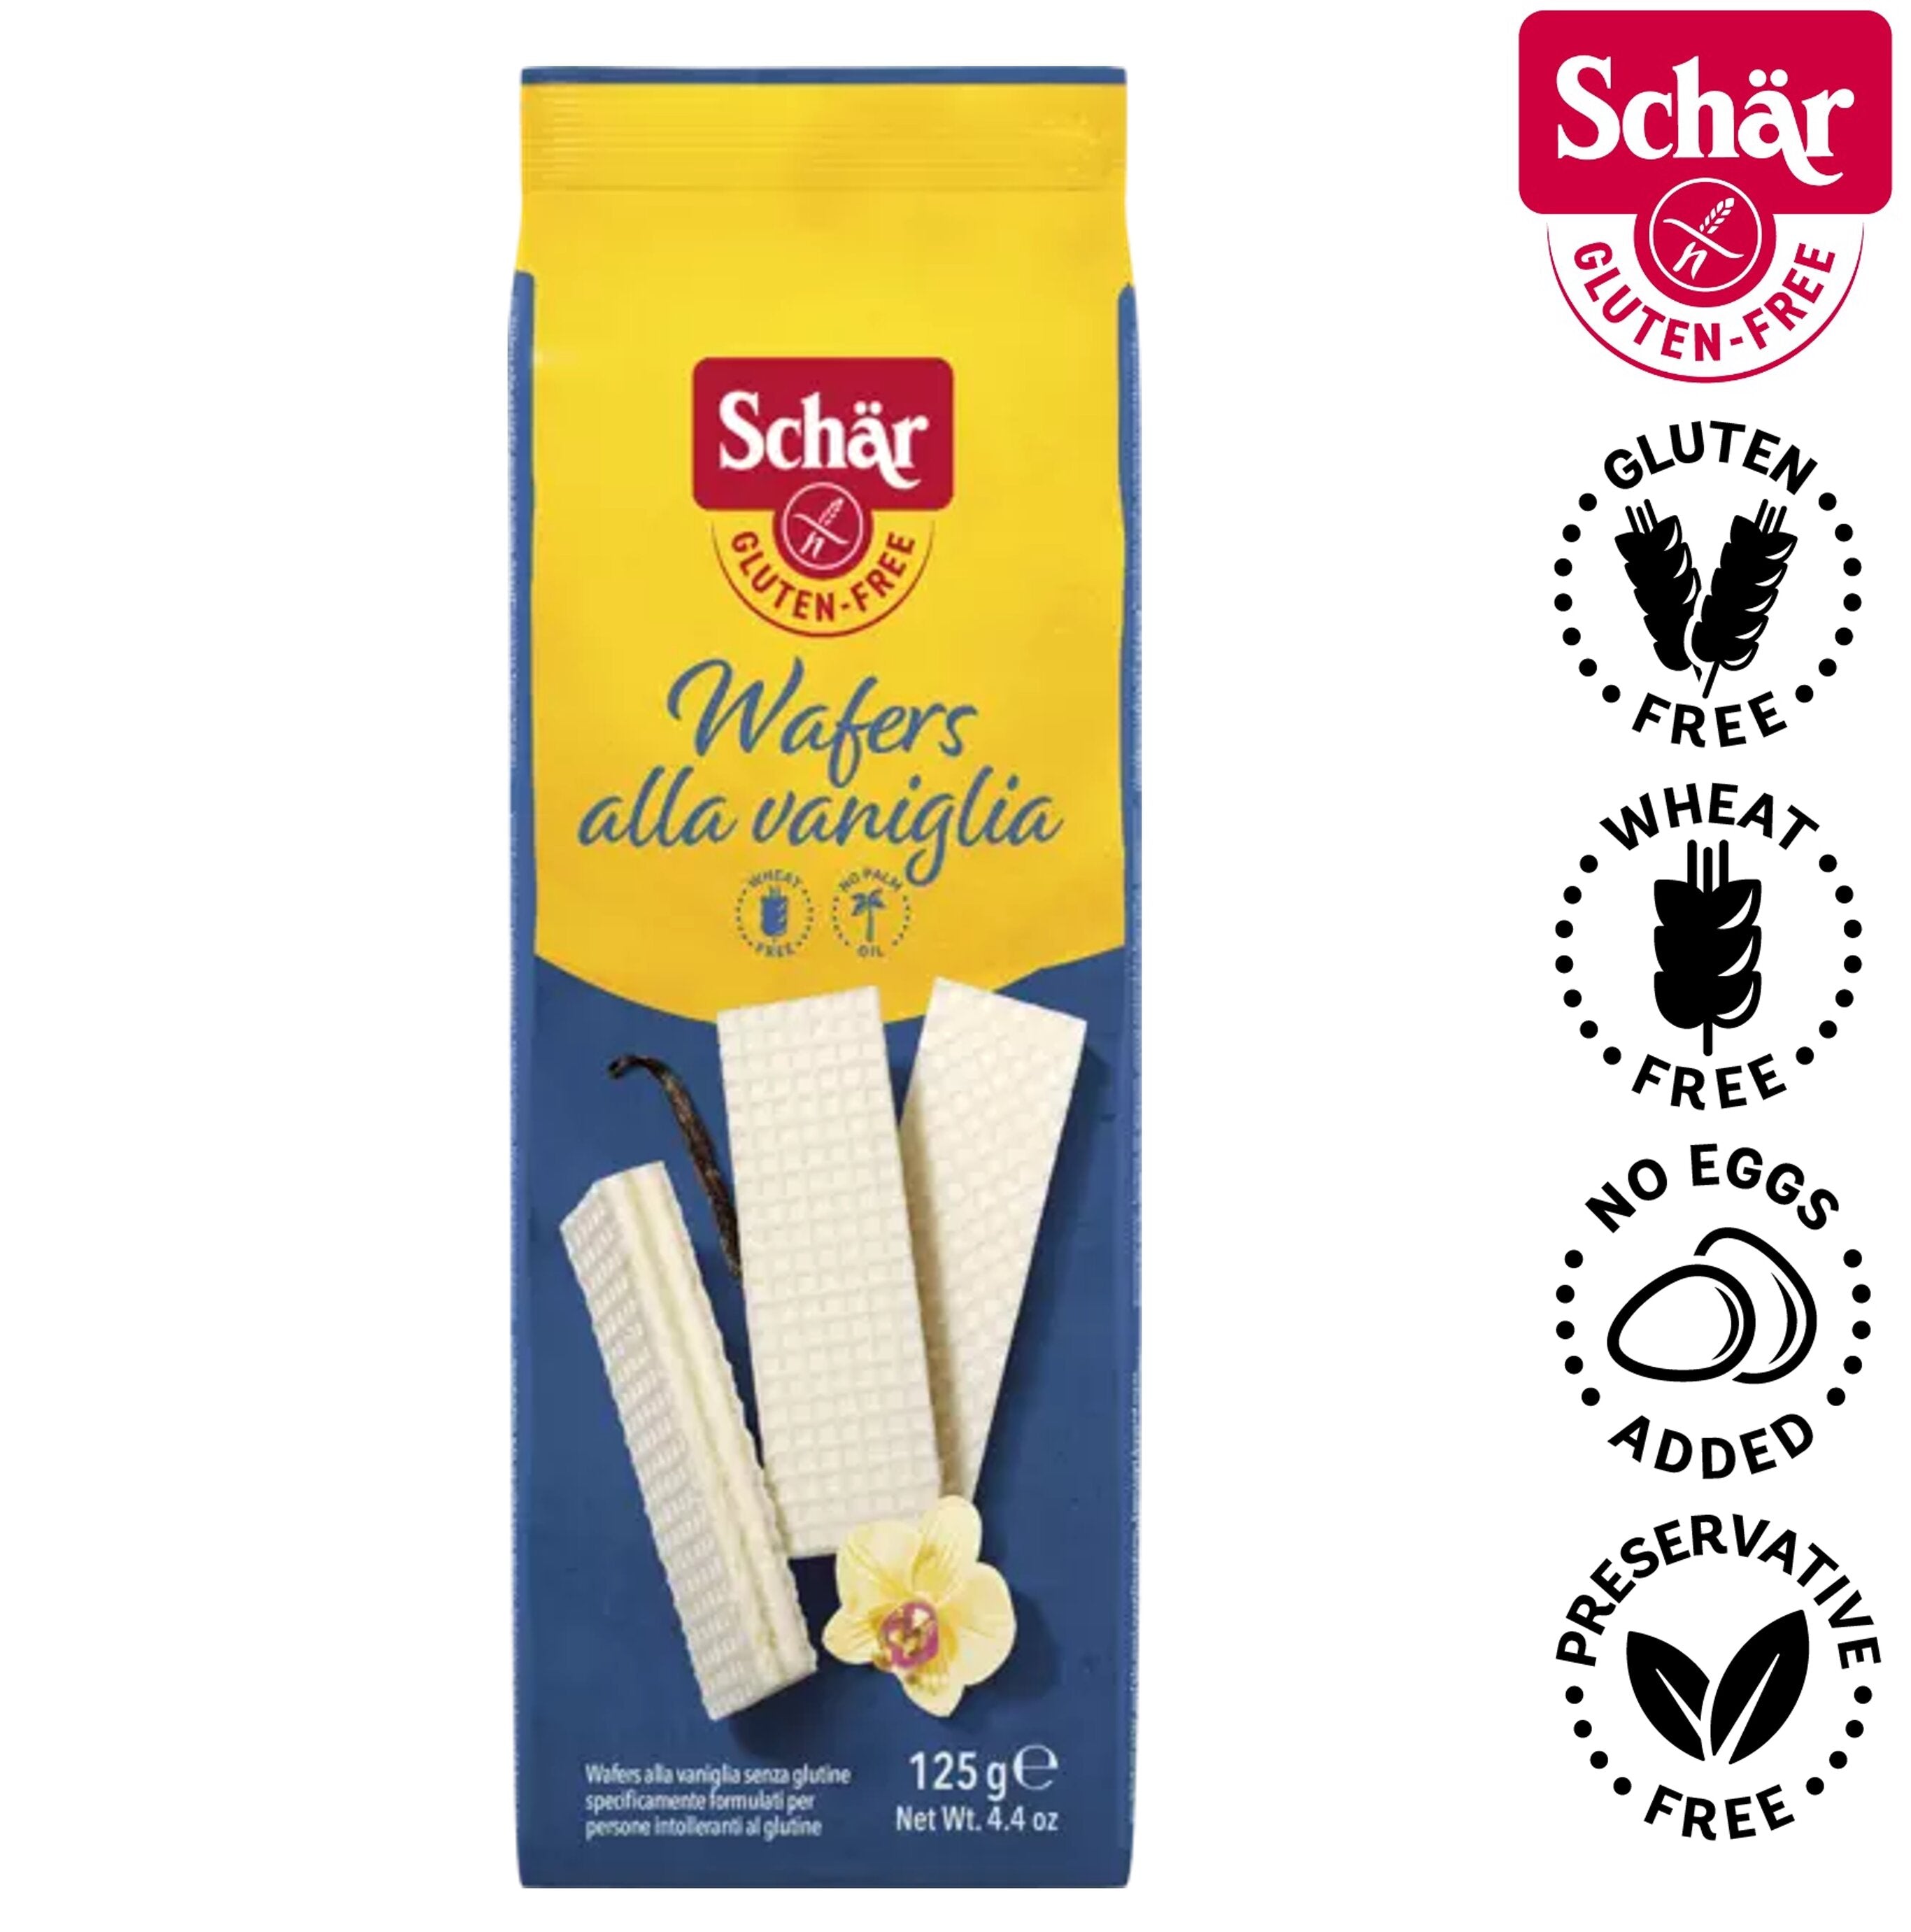 Schar Wafers with Vanilla Cream - Gluten Free